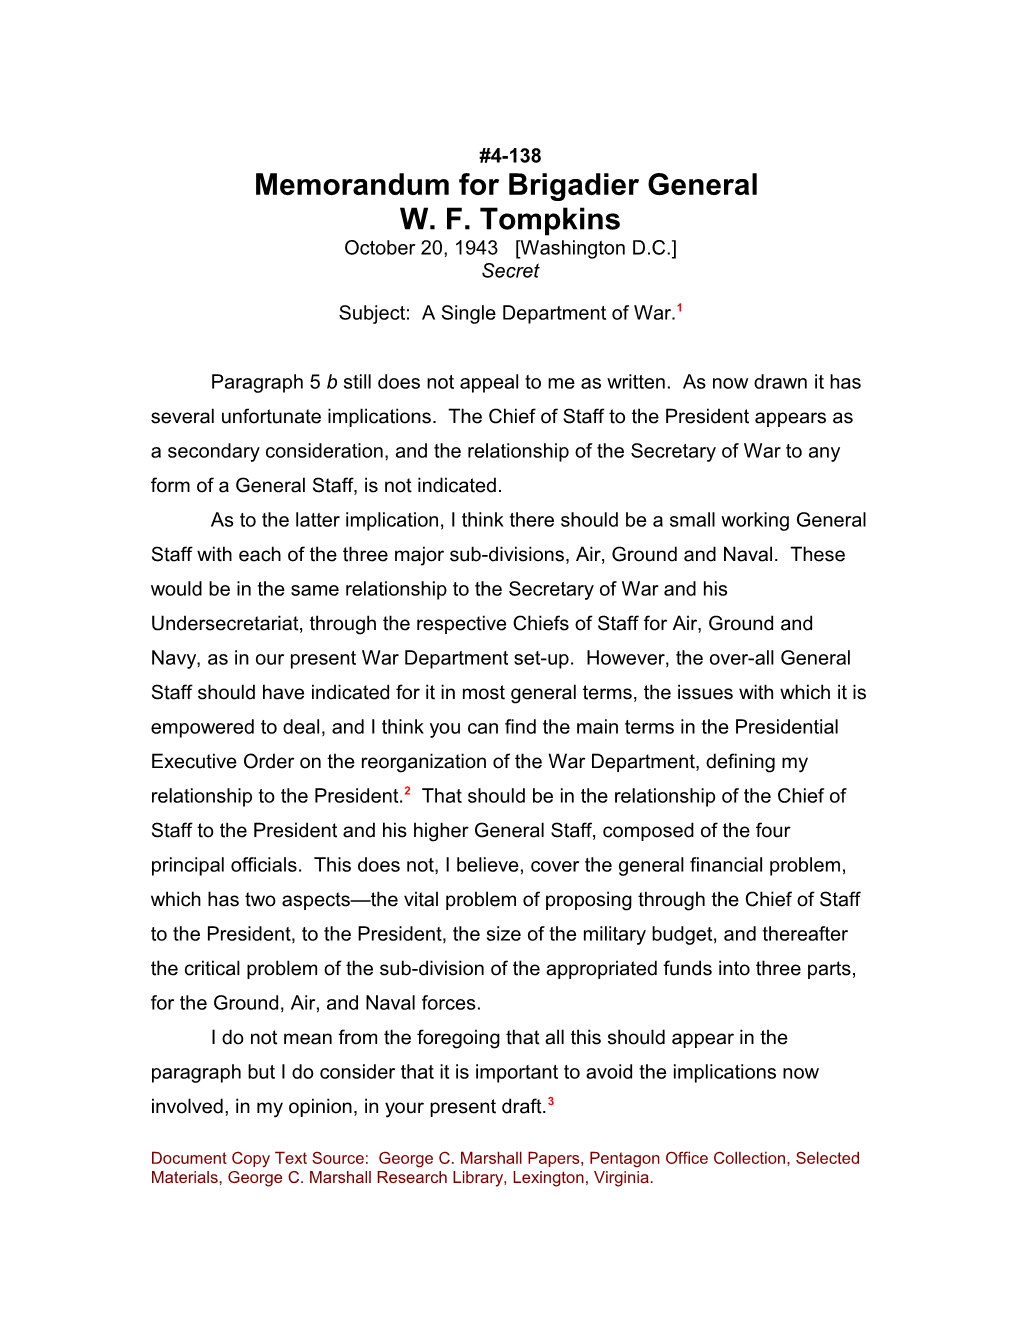 Memorandum for Brigadier General